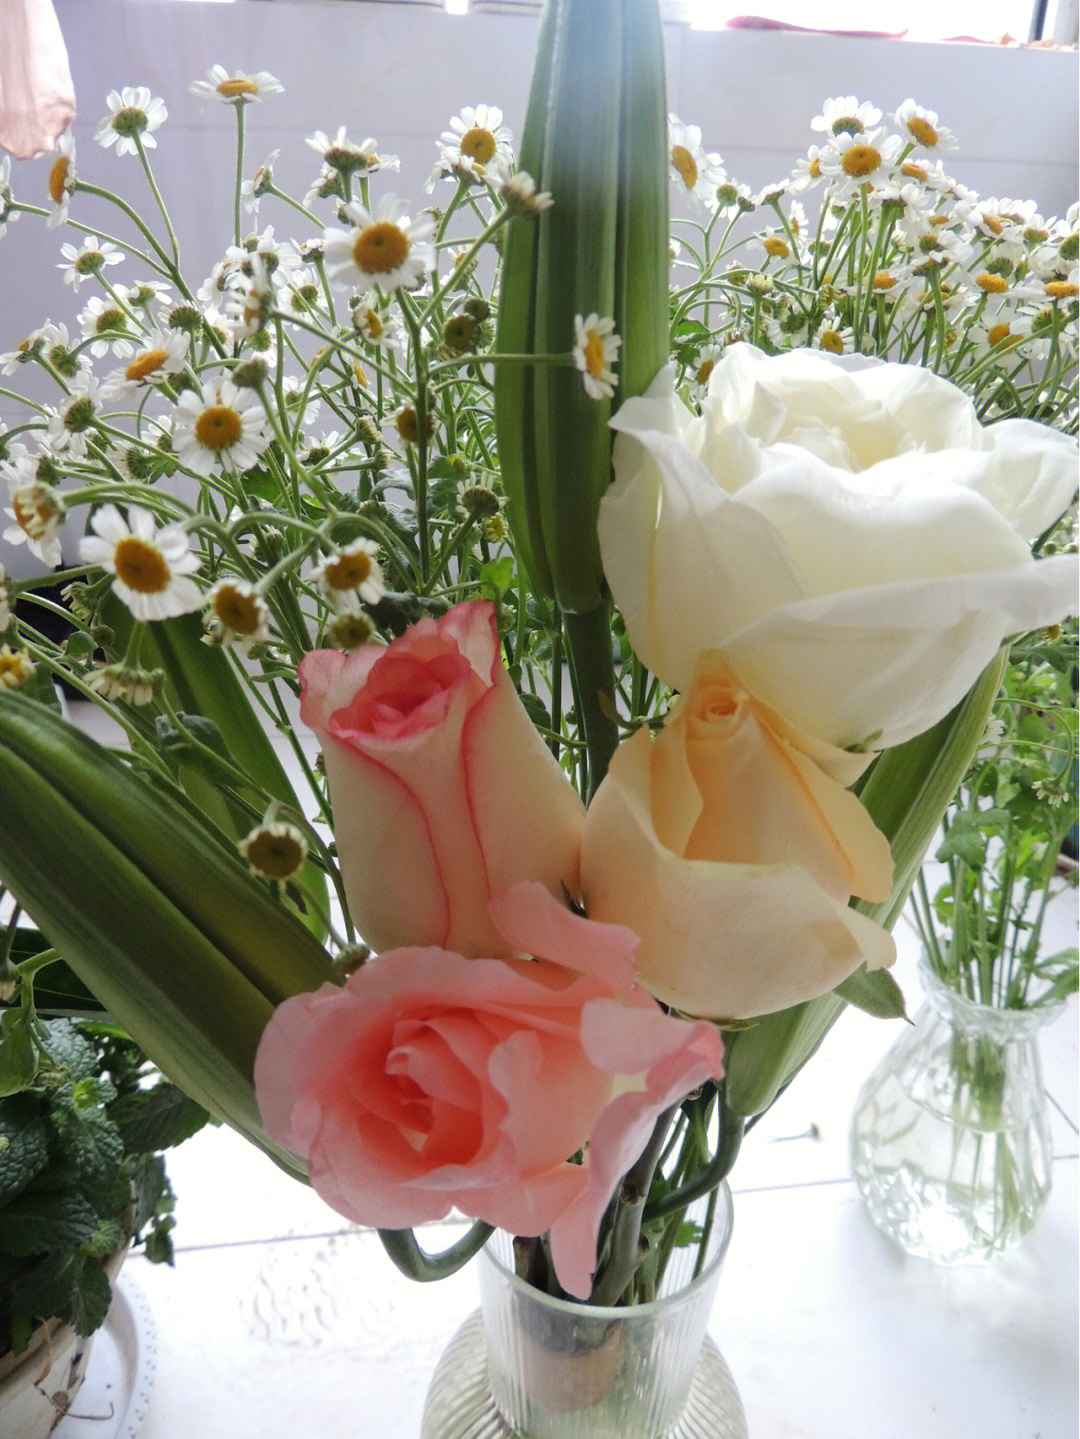 四月&五月花花,每周都给自己挑一束漂亮的鲜花呀,最爱的碎冰蓝玫瑰